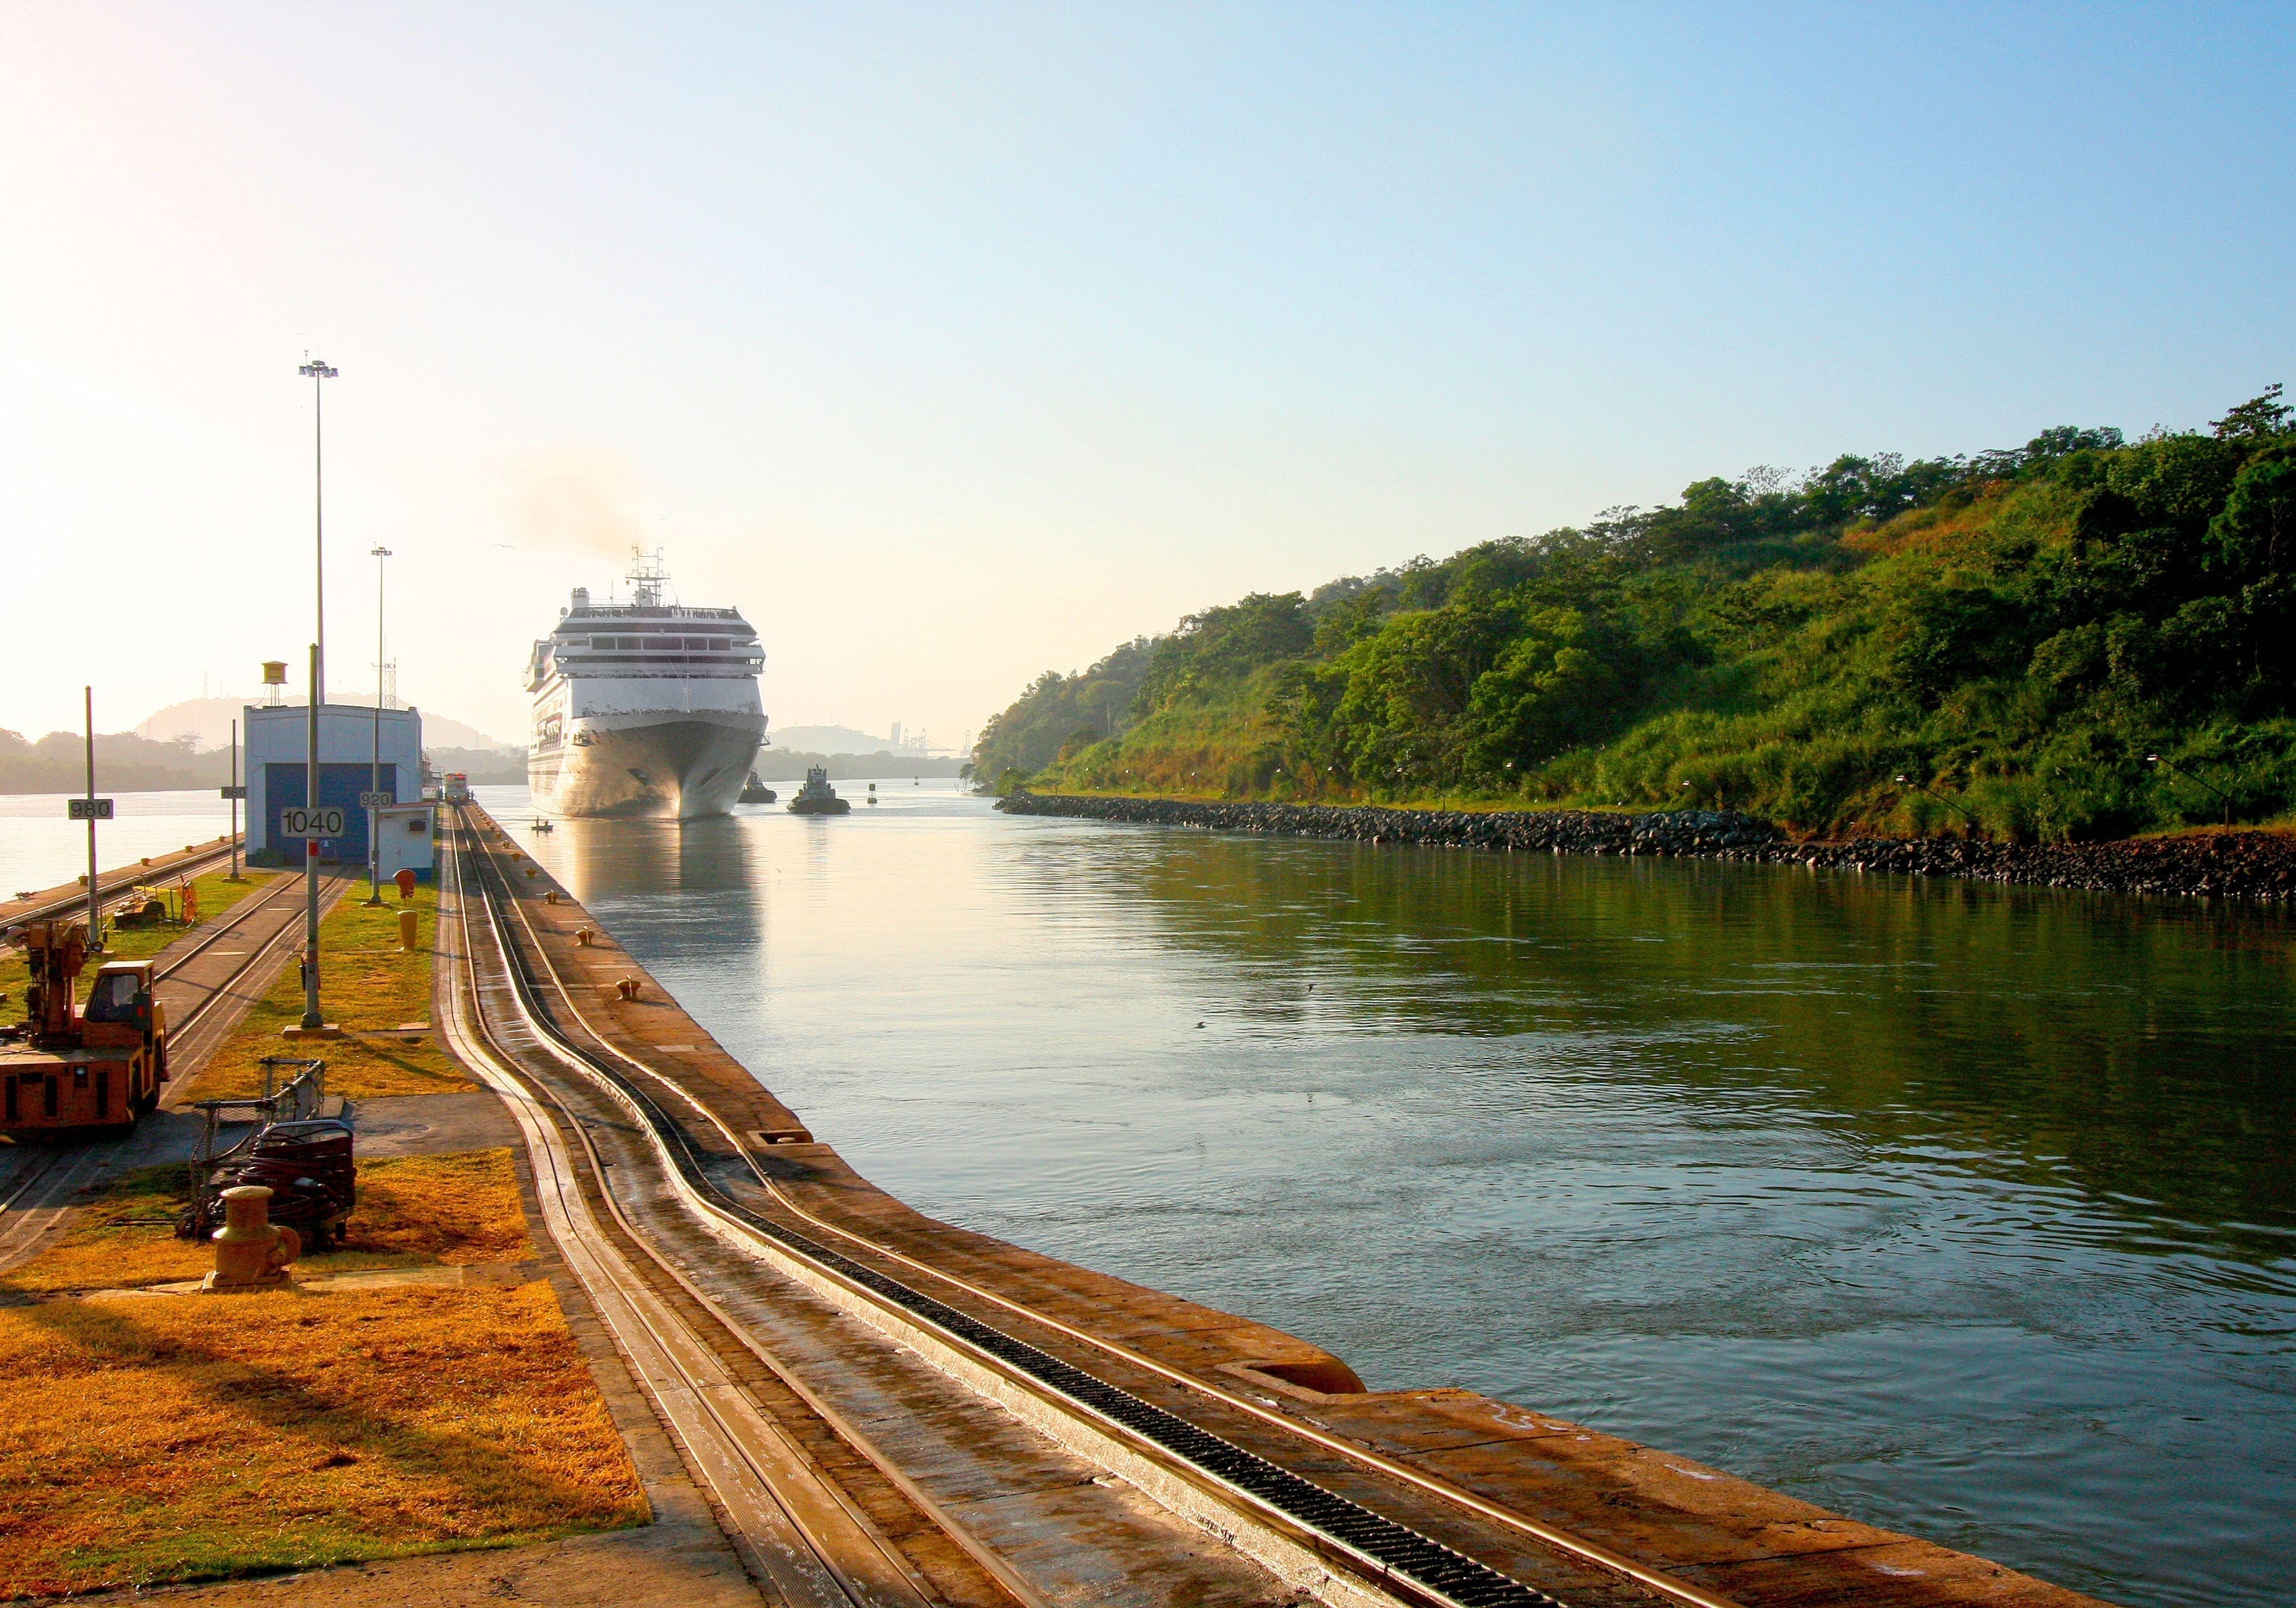 Panama-kanalen